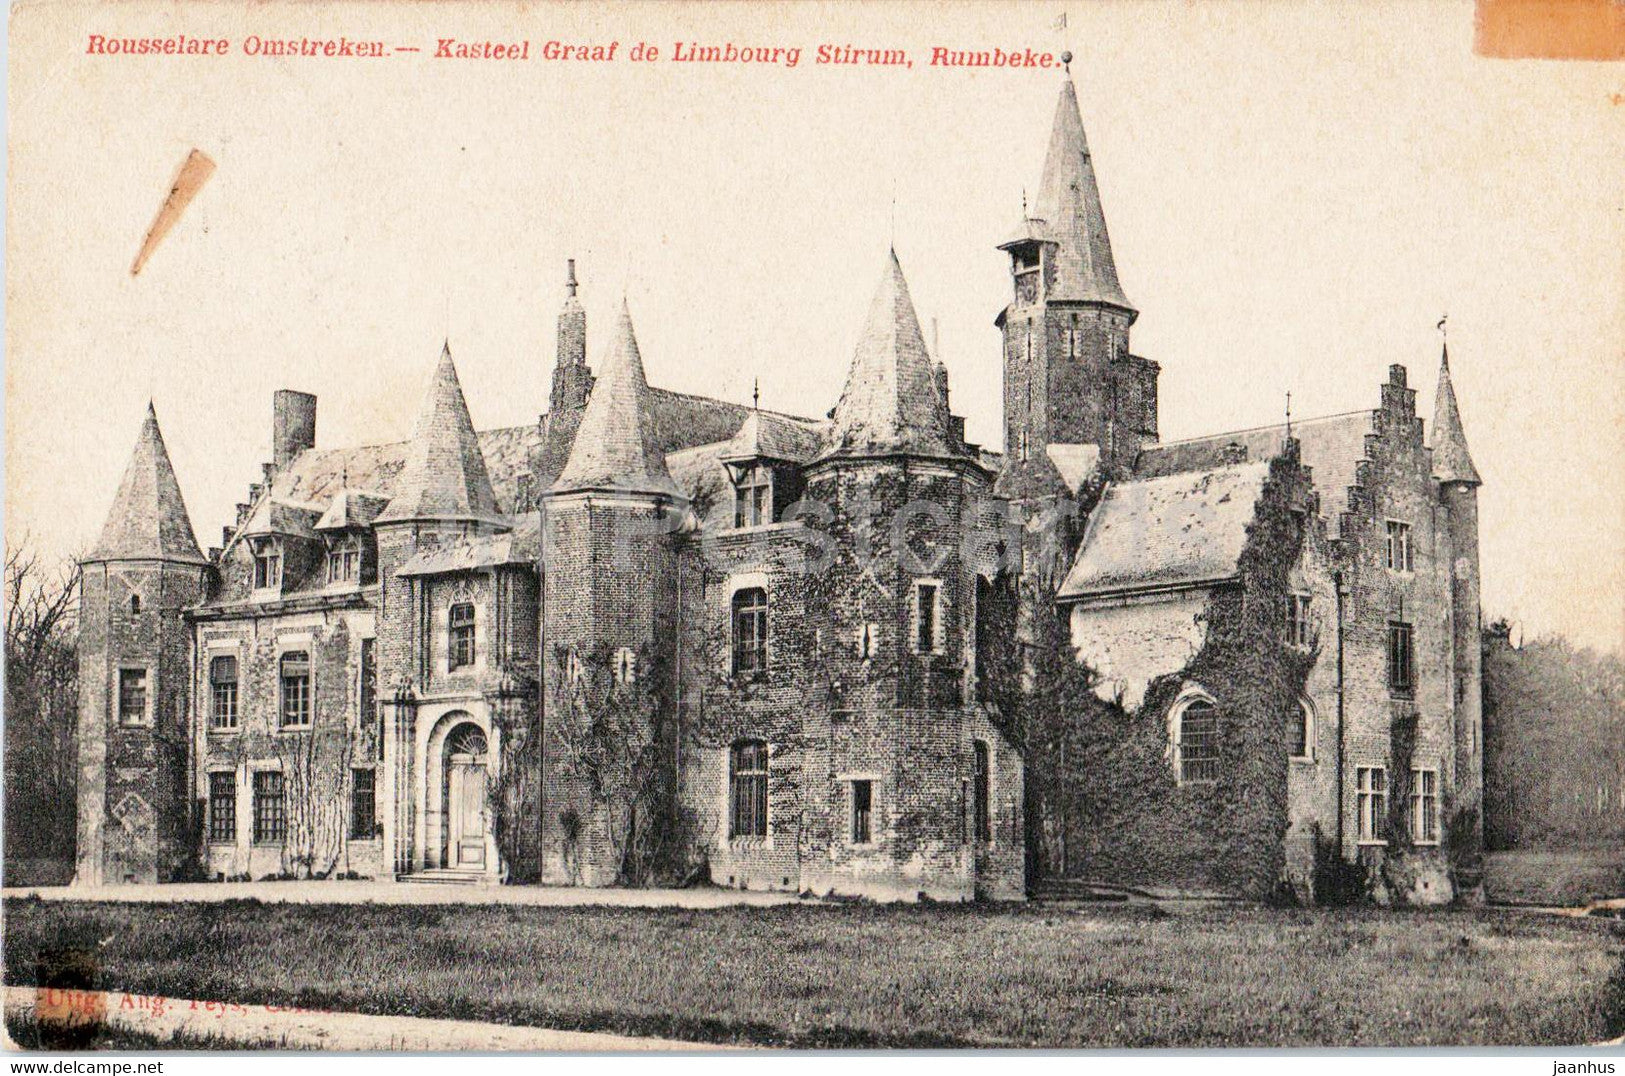 Roeselare - Rousselare Omstreken - Kasteel Graaf de Limbourg Stirum - Rumbeke - old postcard - 1912 - Belgium - used - JH Postcards